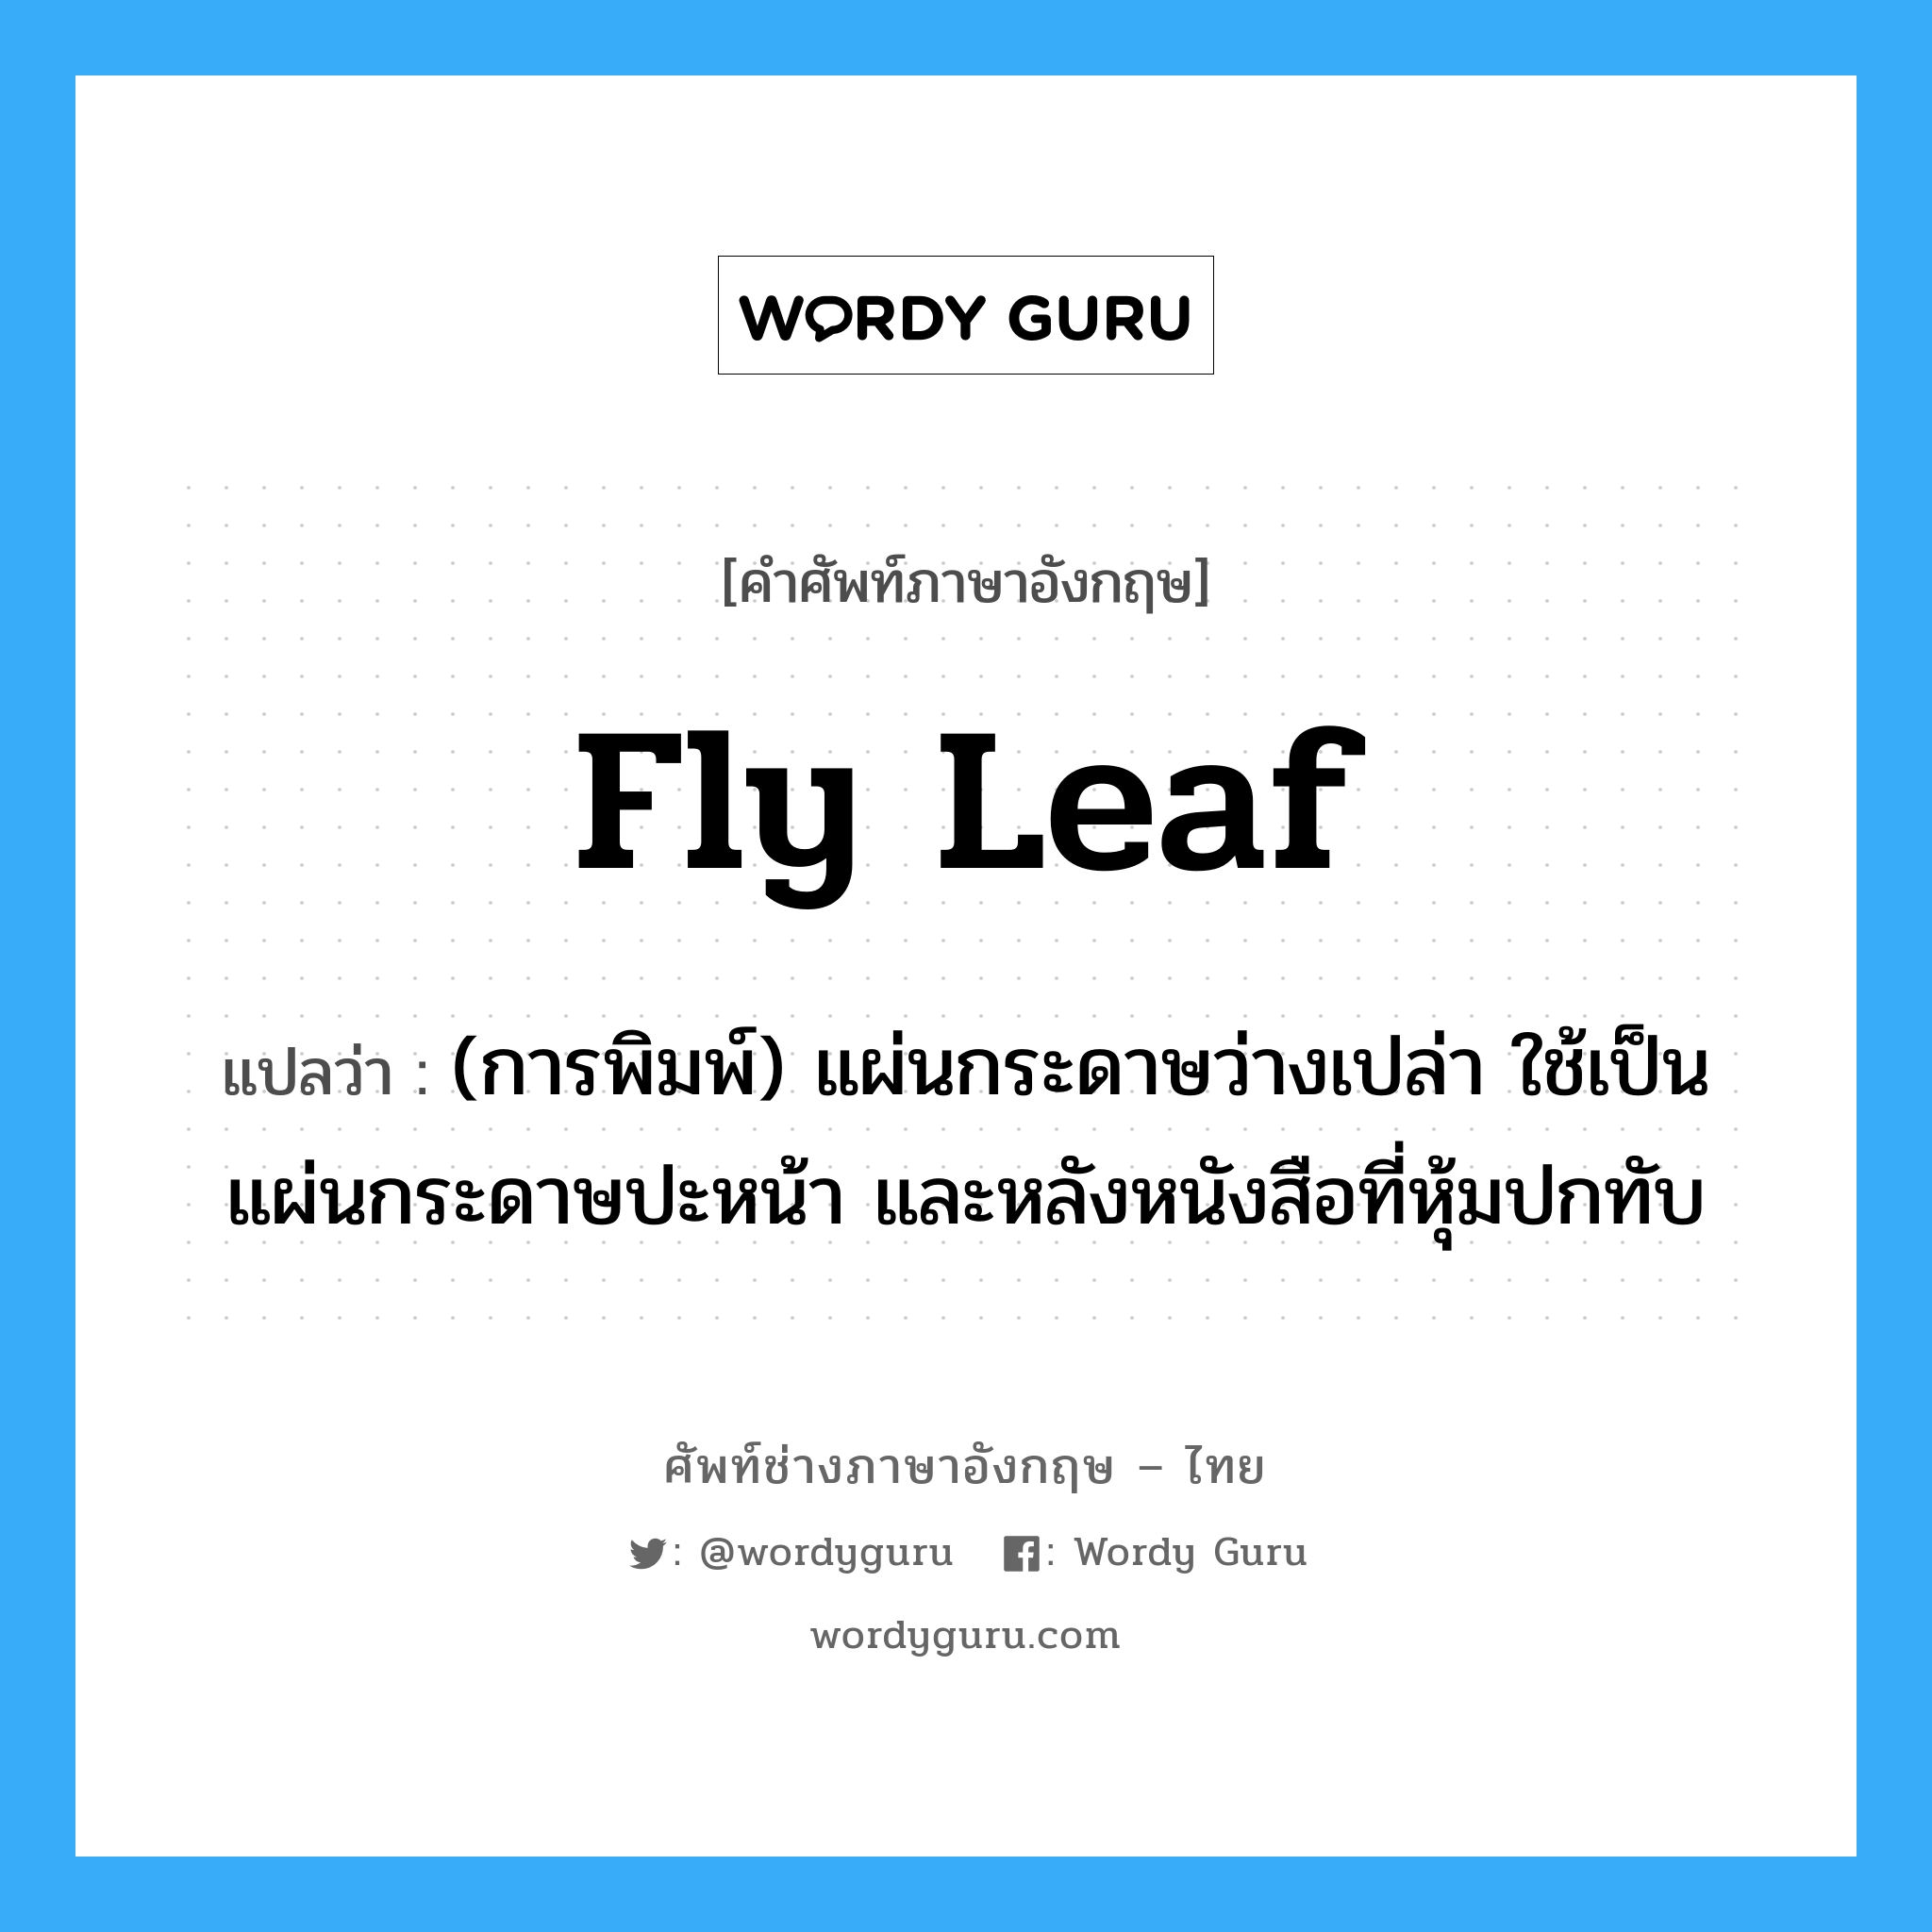 fly leaf แปลว่า?, คำศัพท์ช่างภาษาอังกฤษ - ไทย fly leaf คำศัพท์ภาษาอังกฤษ fly leaf แปลว่า (การพิมพ์) แผ่นกระดาษว่างเปล่า ใช้เป็นแผ่นกระดาษปะหน้า และหลังหนังสือที่หุ้มปกทับ